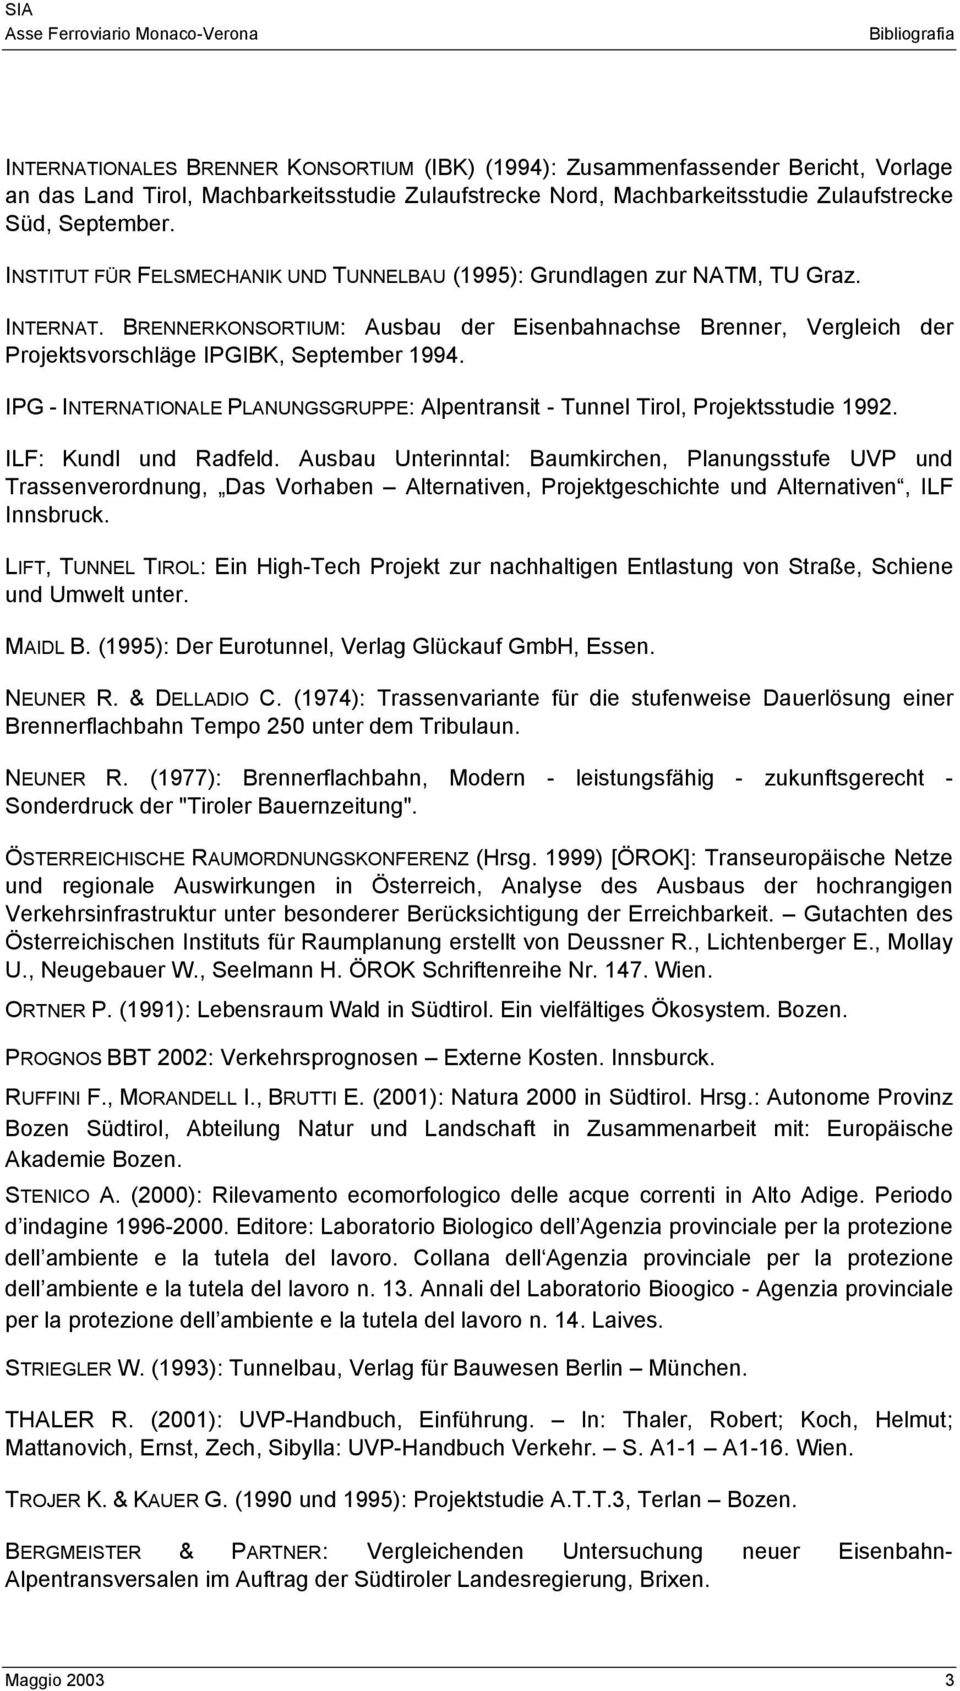 BRENNERKONSORTIUM: Ausbau der Eisenbahnachse Brenner, Vergleich der Projektsvorschläge IPGIBK, September 1994. IPG - INTERNATIONALE PLANUNGSGRUPPE: Alpentransit - Tunnel Tirol, Projektsstudie 1992.